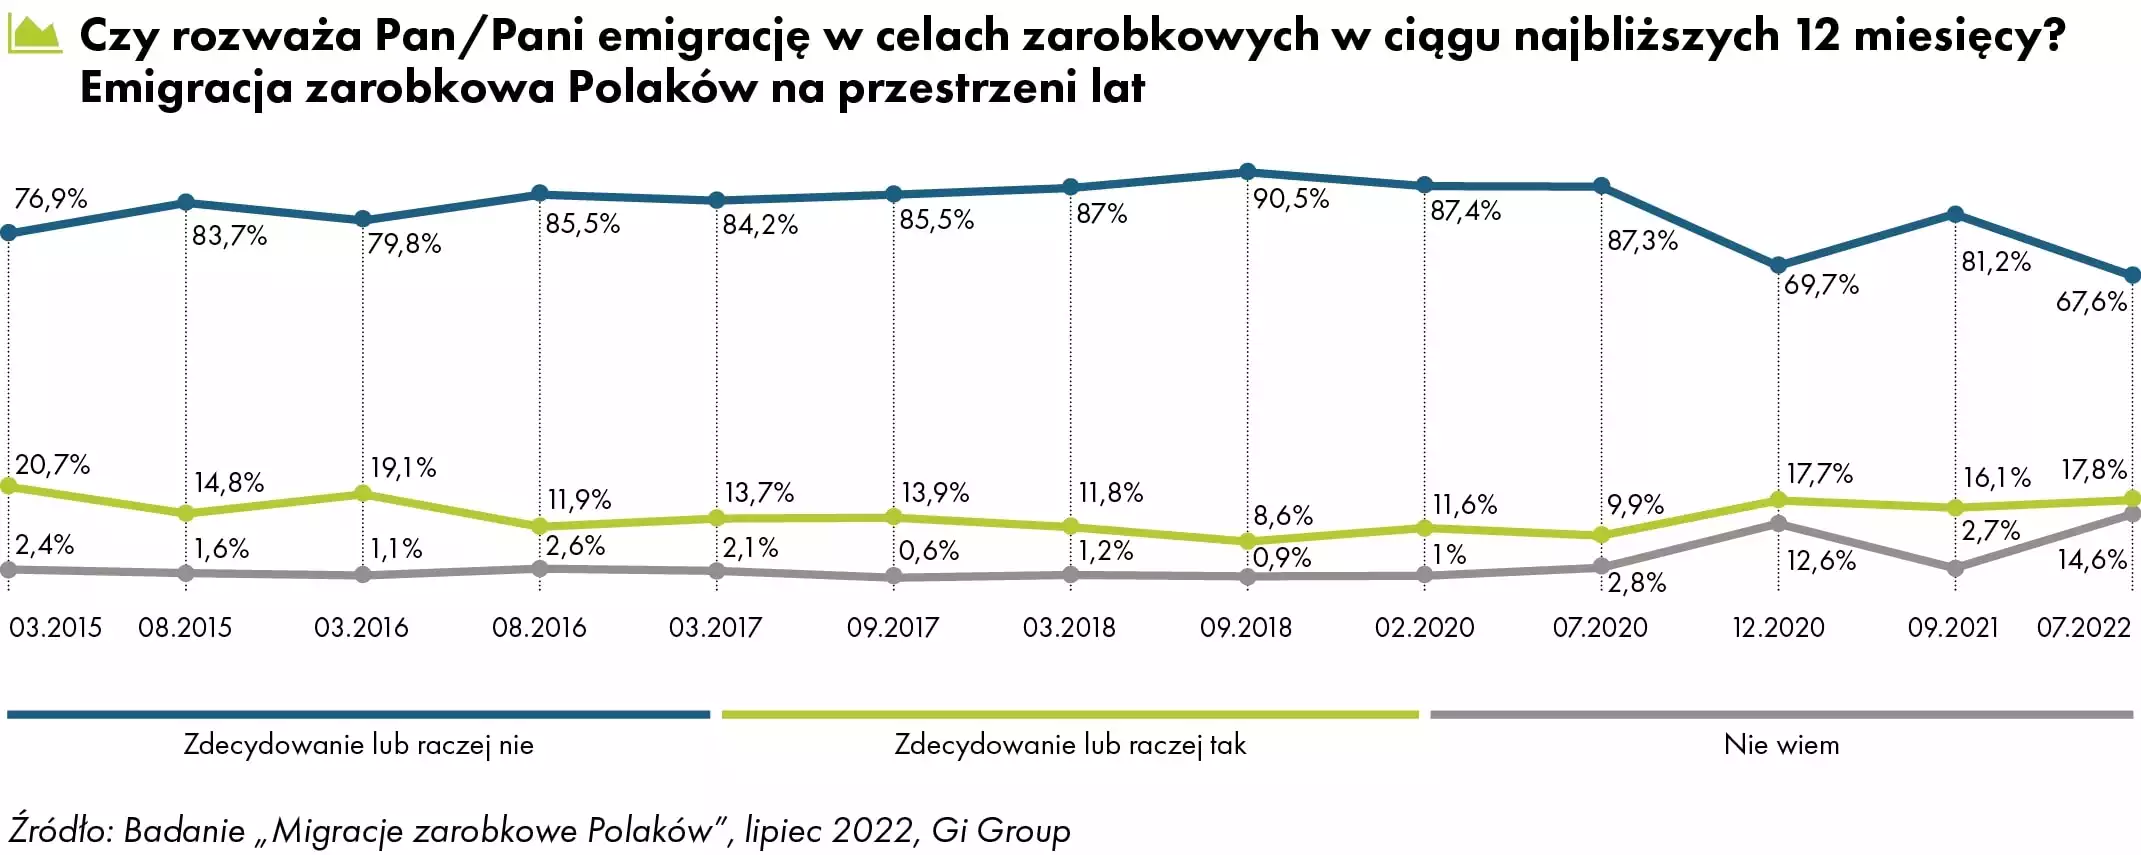 Emigracja zarobkowa Polaków na przestrzeni lat